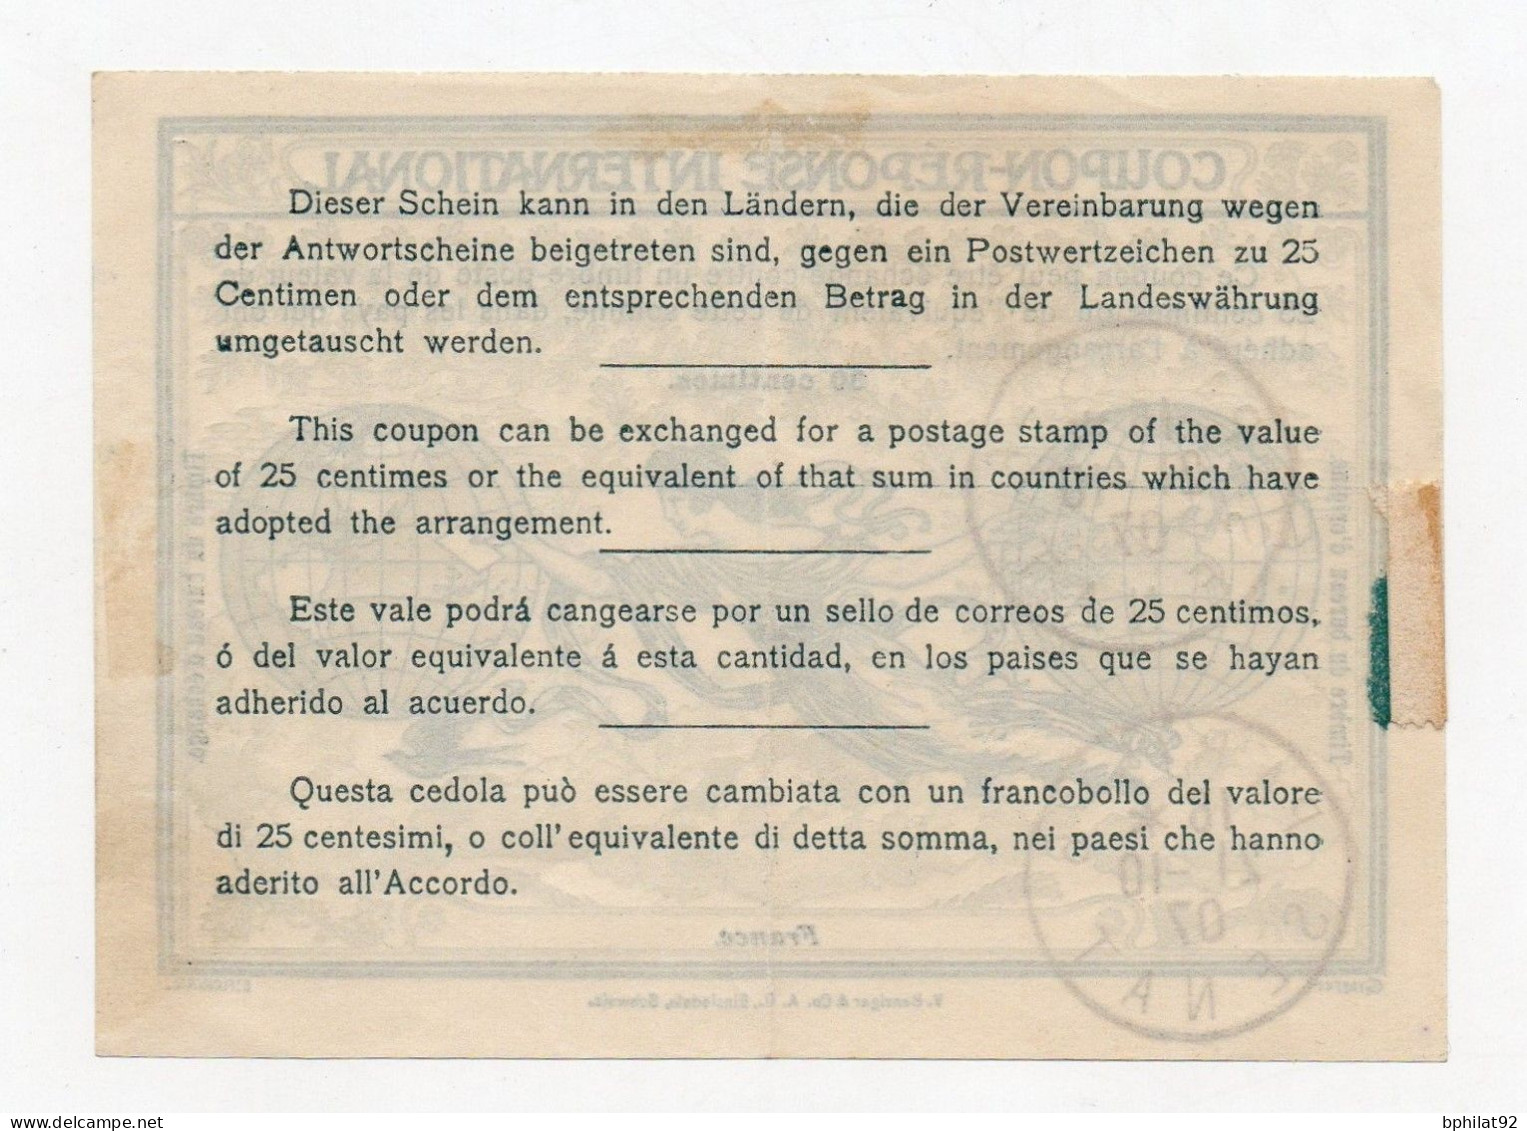 !!! COUPON REPONSE INTERNATIONAL OBLIT PARIS - SENAT DU 21/10/1907 (CREES LE 1/10/1907) - Reply Coupons